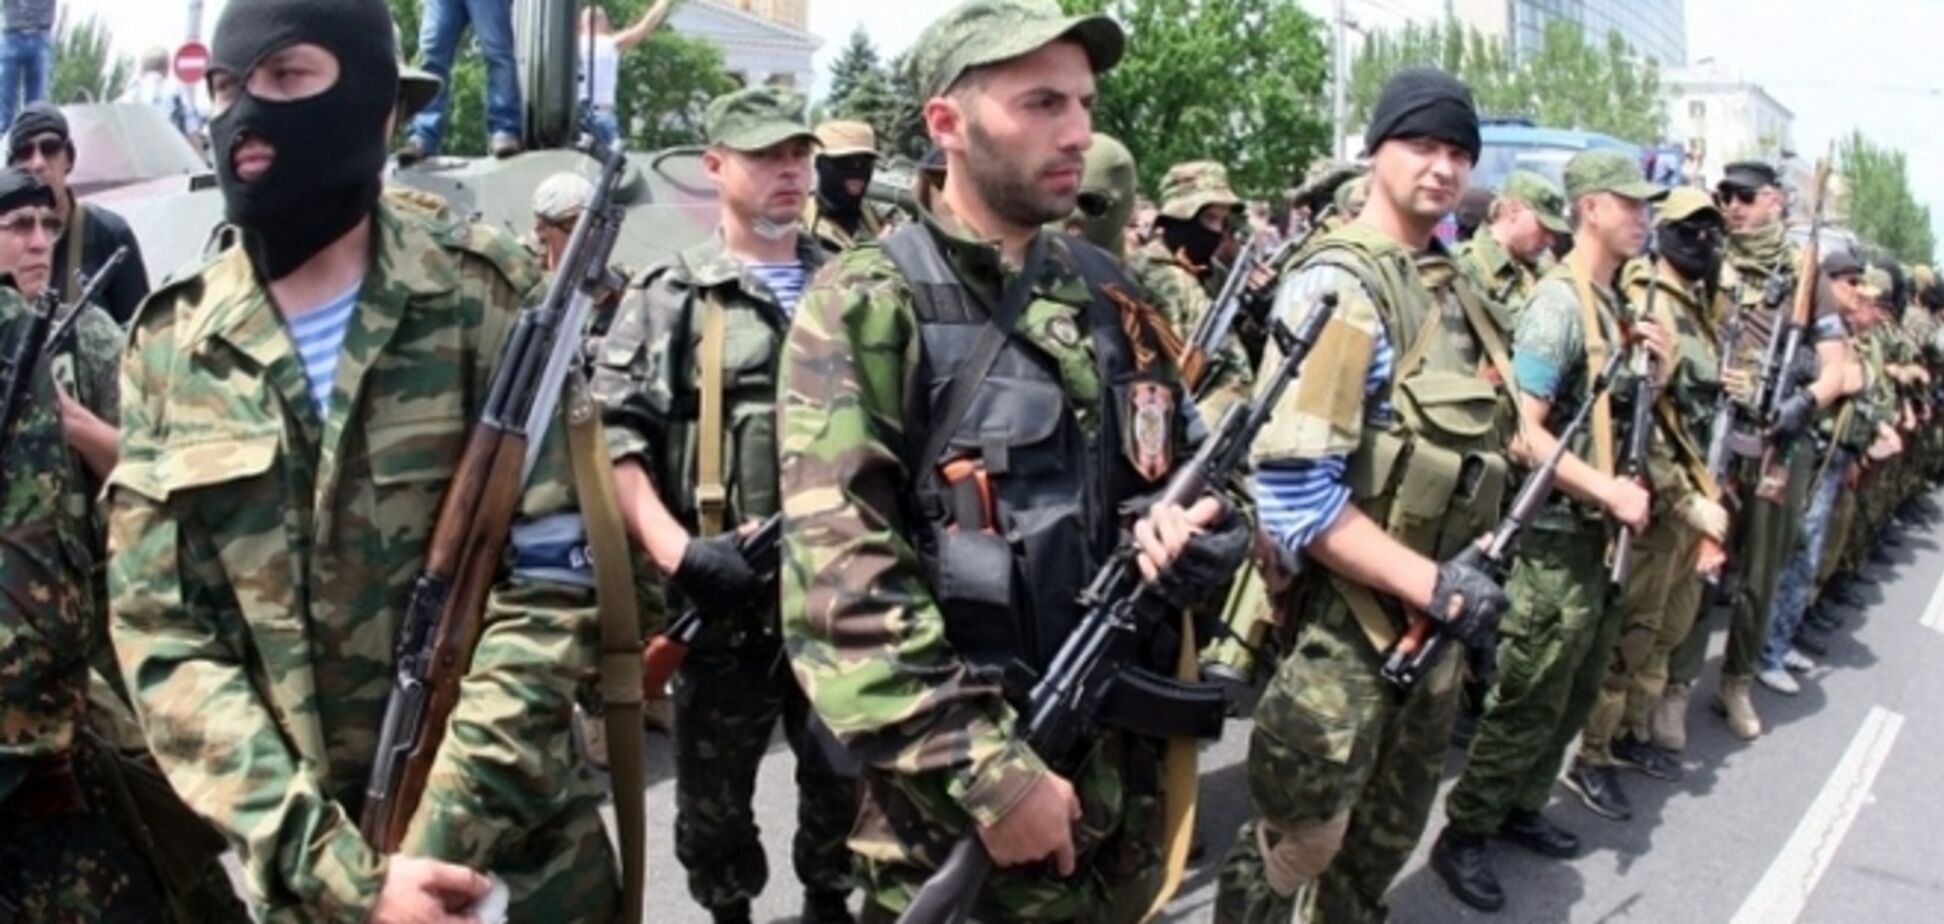 Террористы под угрозой расстрела заставляют местных жителей присягать на верность 'ЛНР'